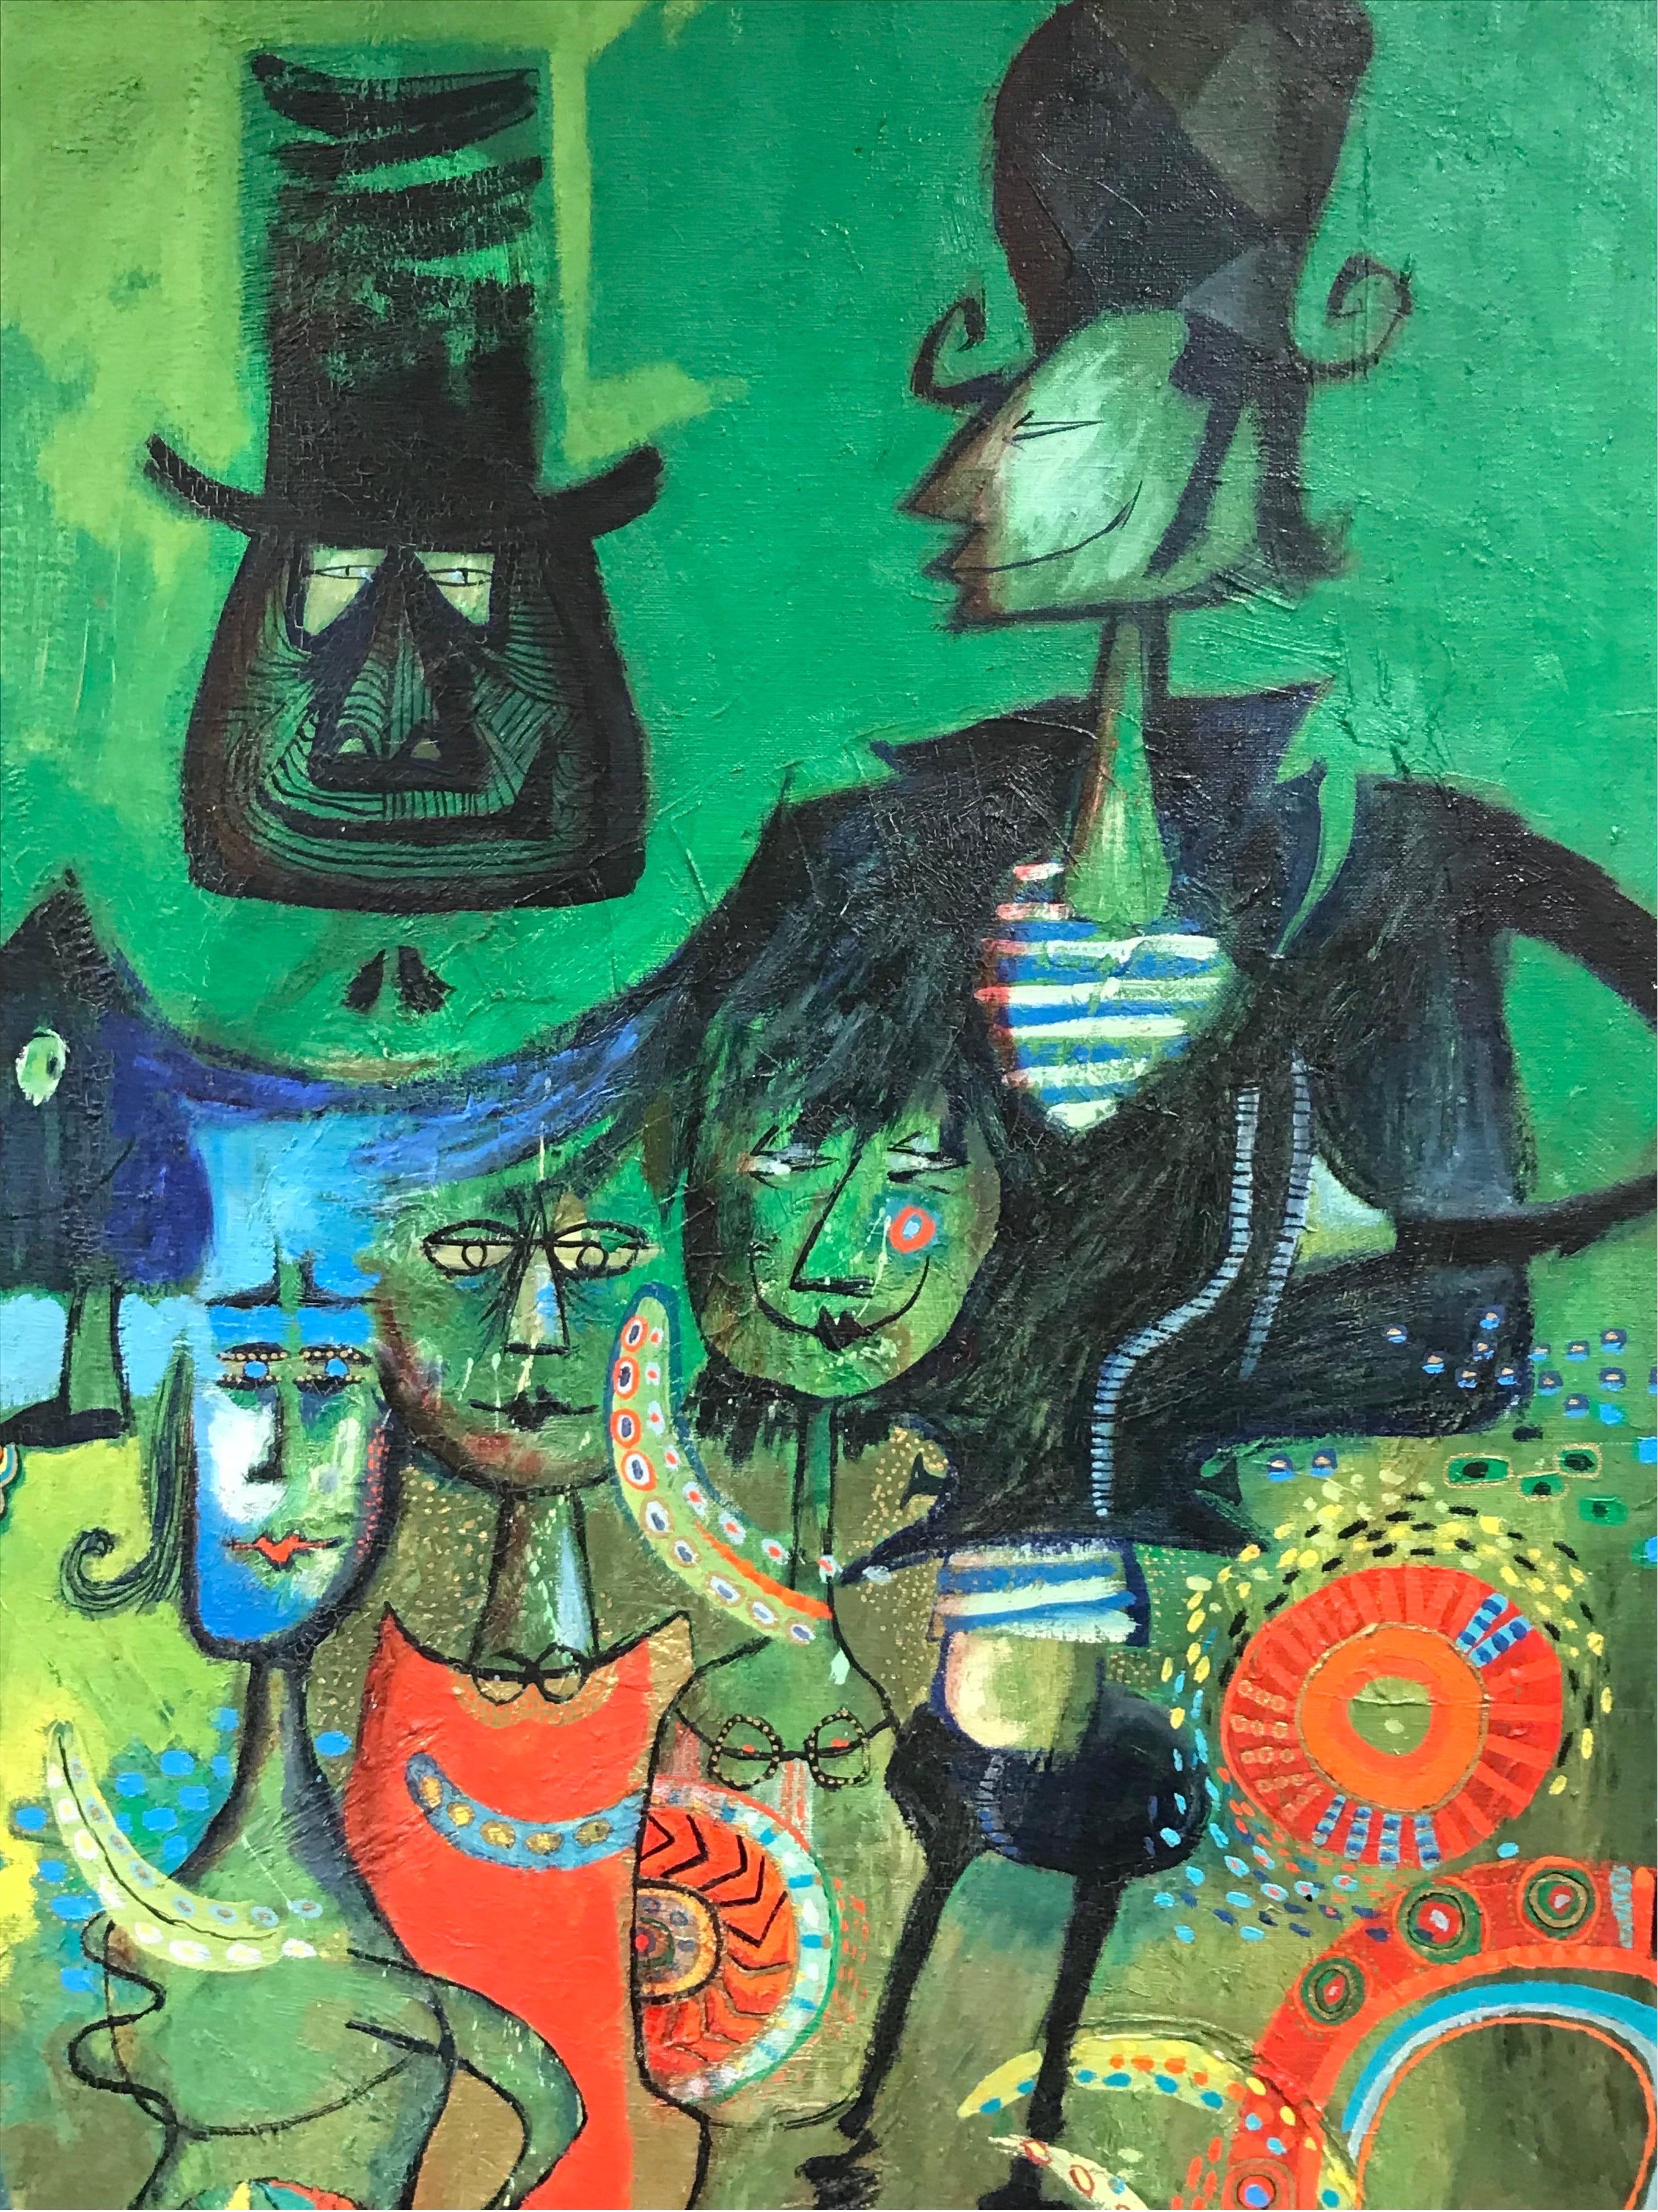 Peinture à l'huile moderniste française des années 1960 sur fond vert avec des figuresbizarres - Moderne Painting par 20th Century French School